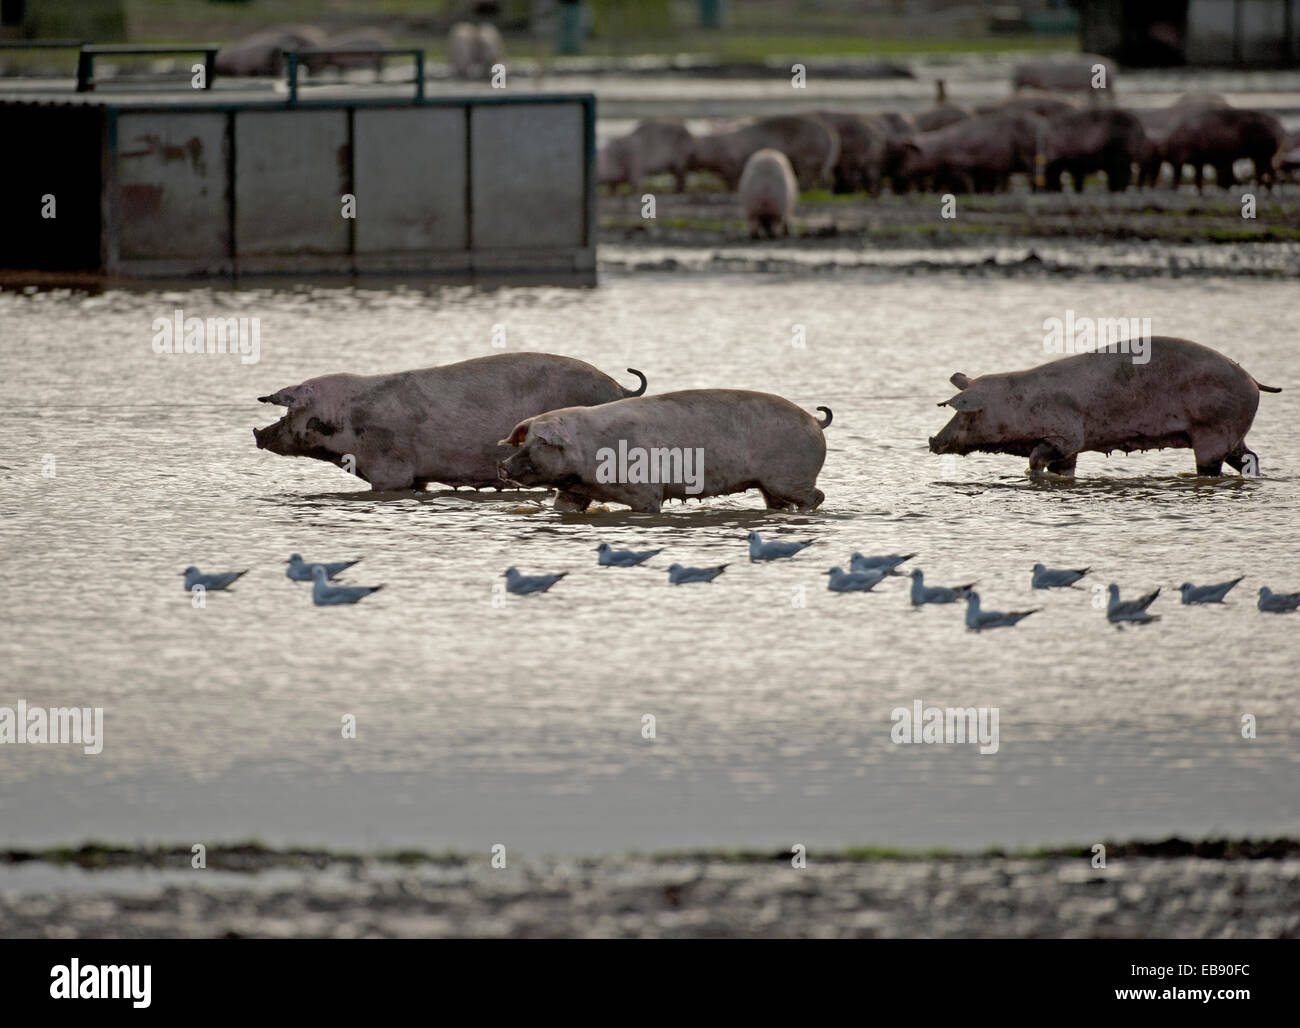 Free-range Pig Farming Industry animali andare per un dispositivo di compressione in un campo inondato, a Lossiemouth, murene. La Scozia. SCO 9239. Foto Stock